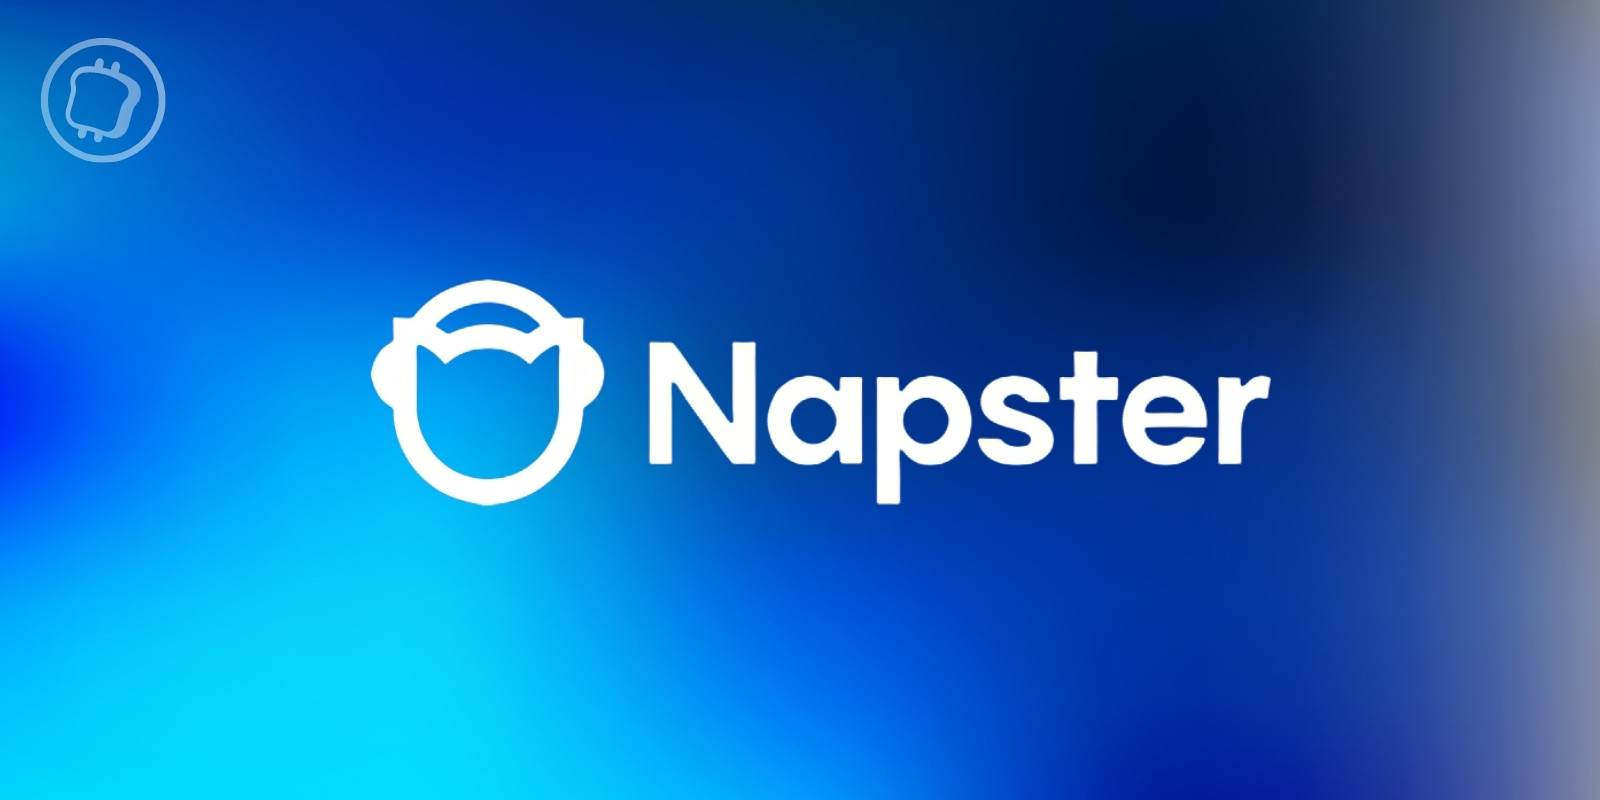 Napster officialise son incursion dans le Web3 avec le lancement de son propre token